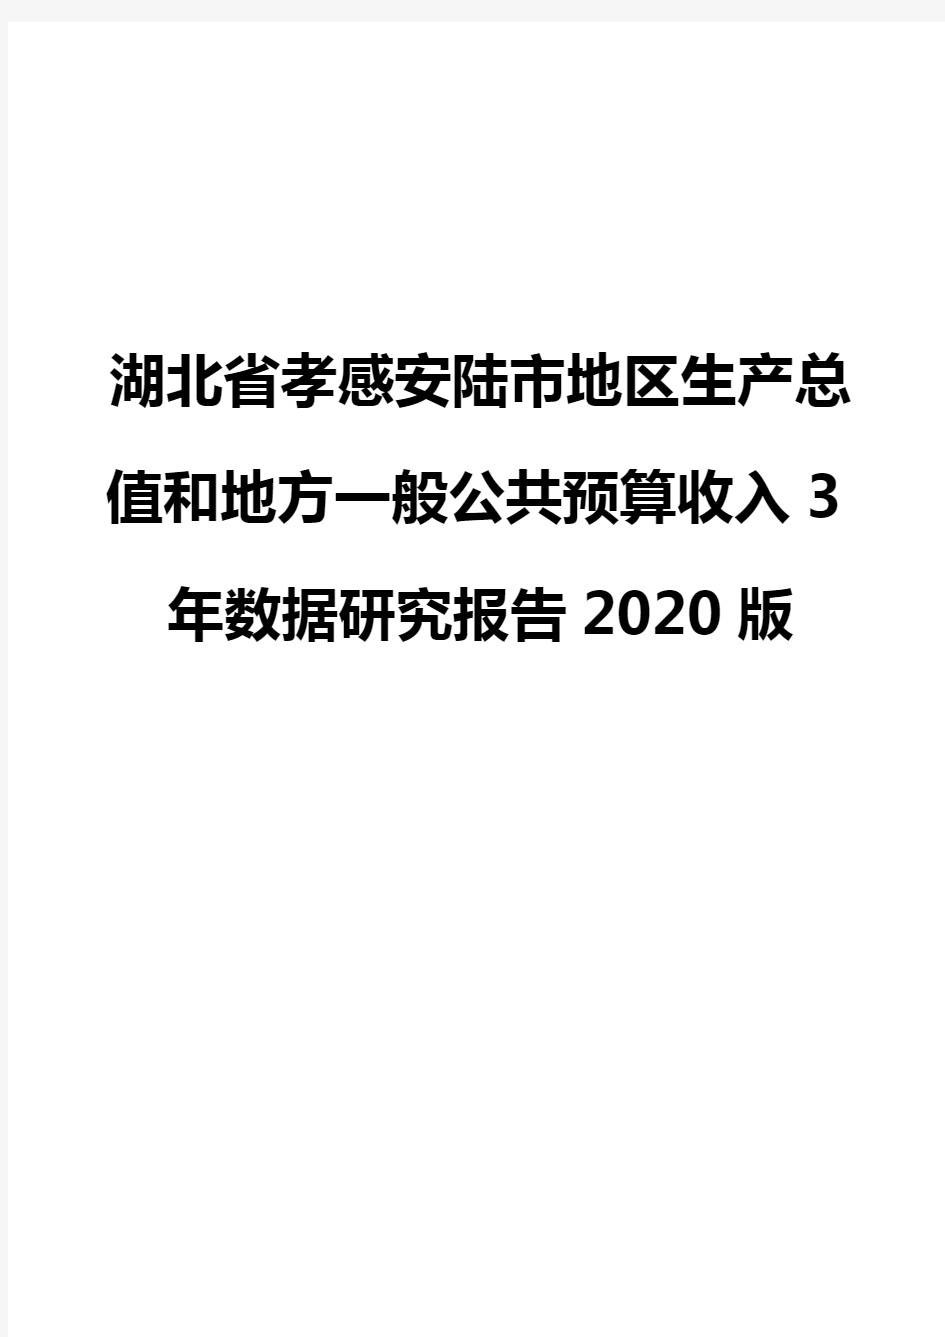 湖北省孝感安陆市地区生产总值和地方一般公共预算收入3年数据研究报告2020版